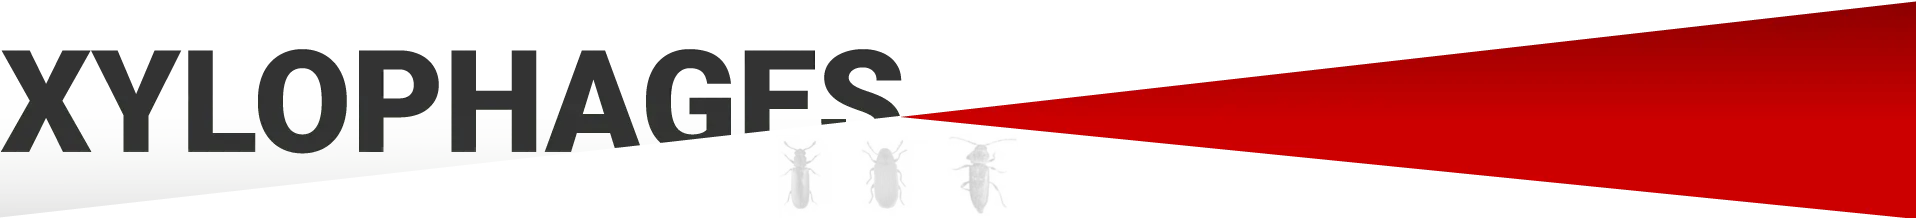 Les insectes xylophages, qui sont-ils ? Termites souterrains, termites des bois secs, capricornes des maisons, charançons du bois, petites vrillettes du bois, hespérophanes, Lyctus, grosses vrillettes….